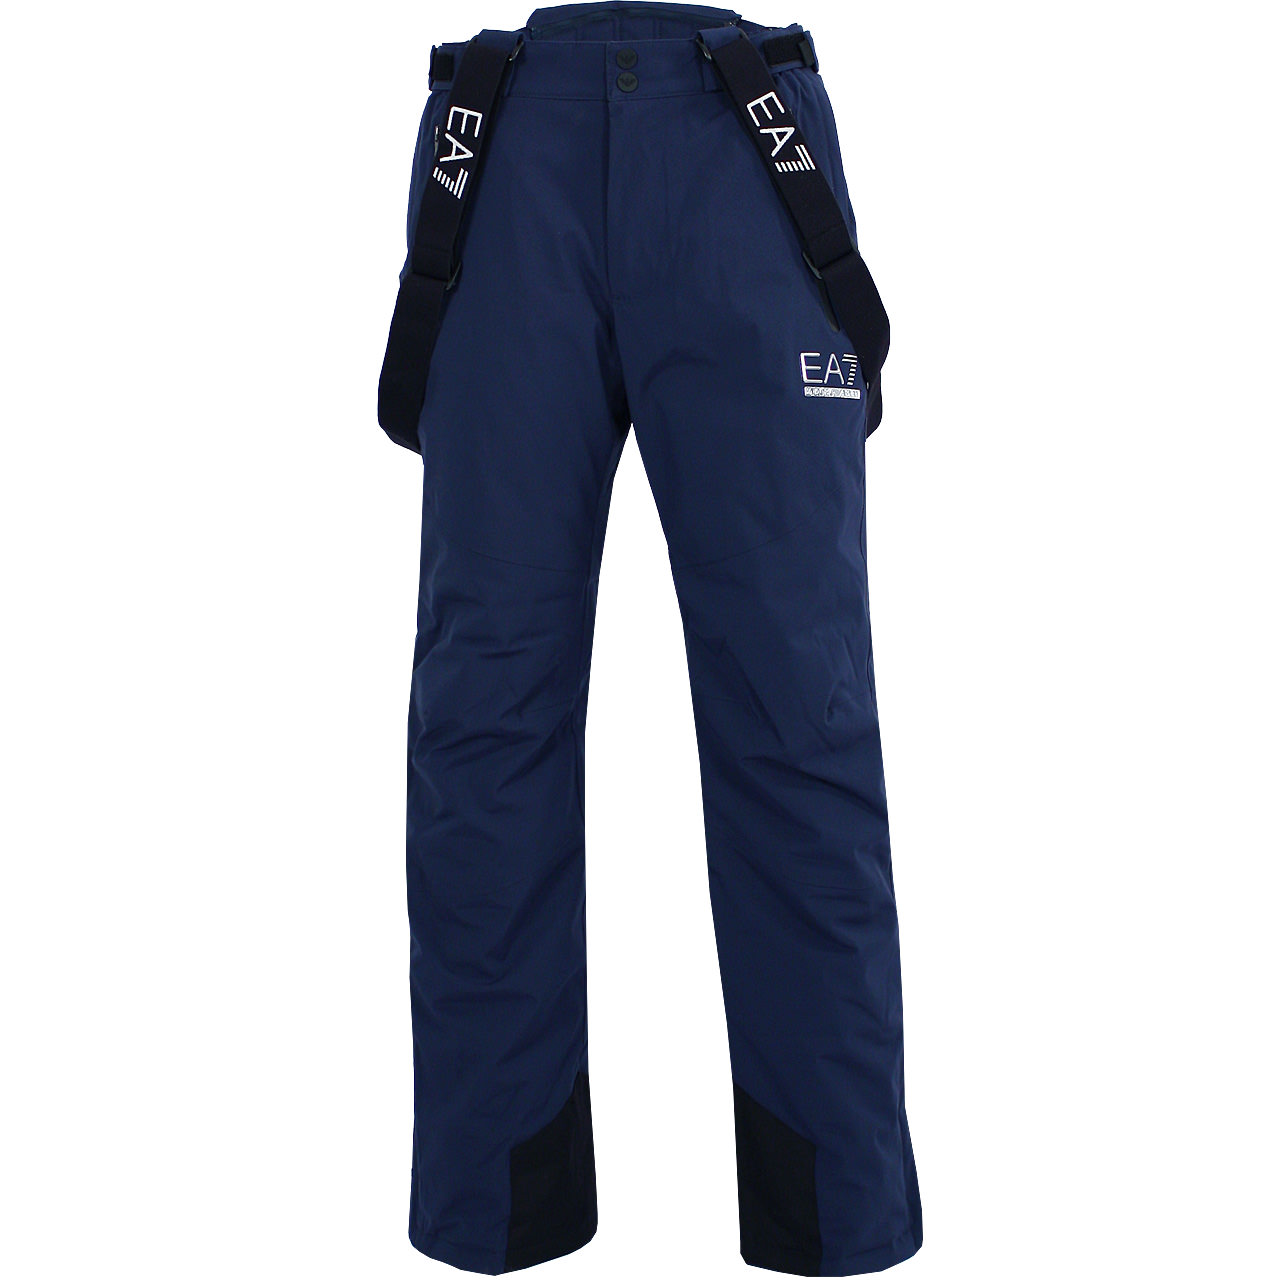 EA7 Emporio Armani Men Pants navy blue 